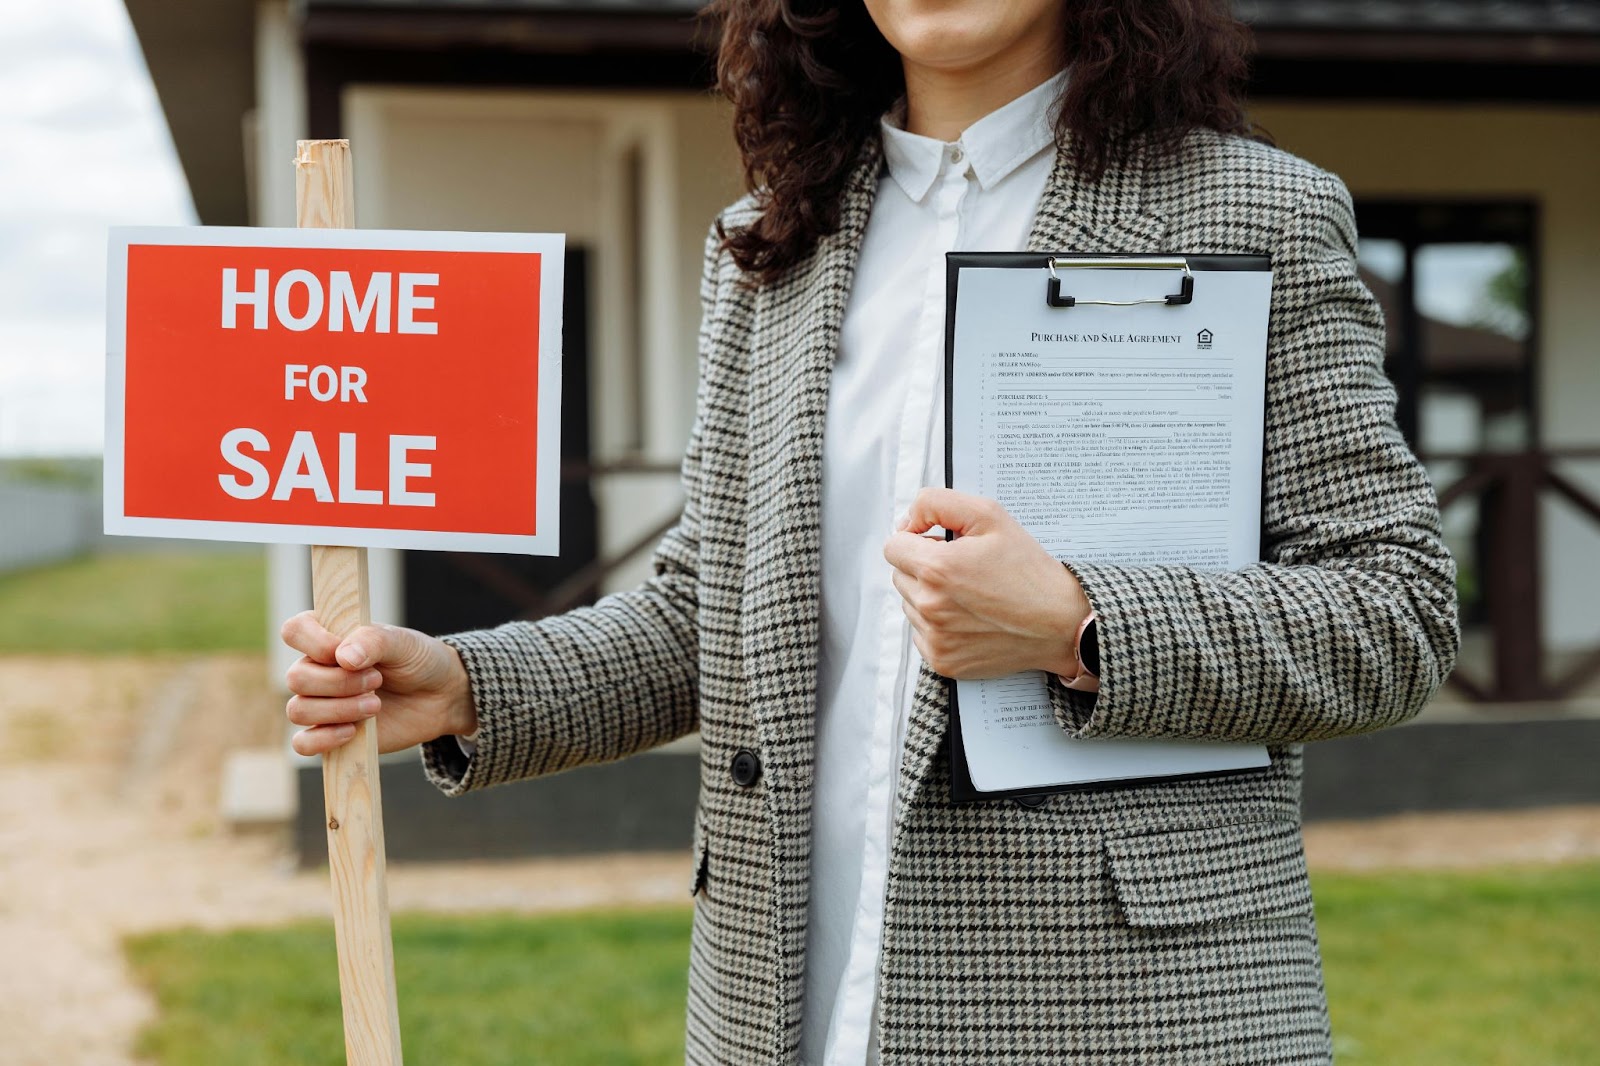 Agente inmobiliaria sosteniendo un cartel de "Home for Sale" y un contrato